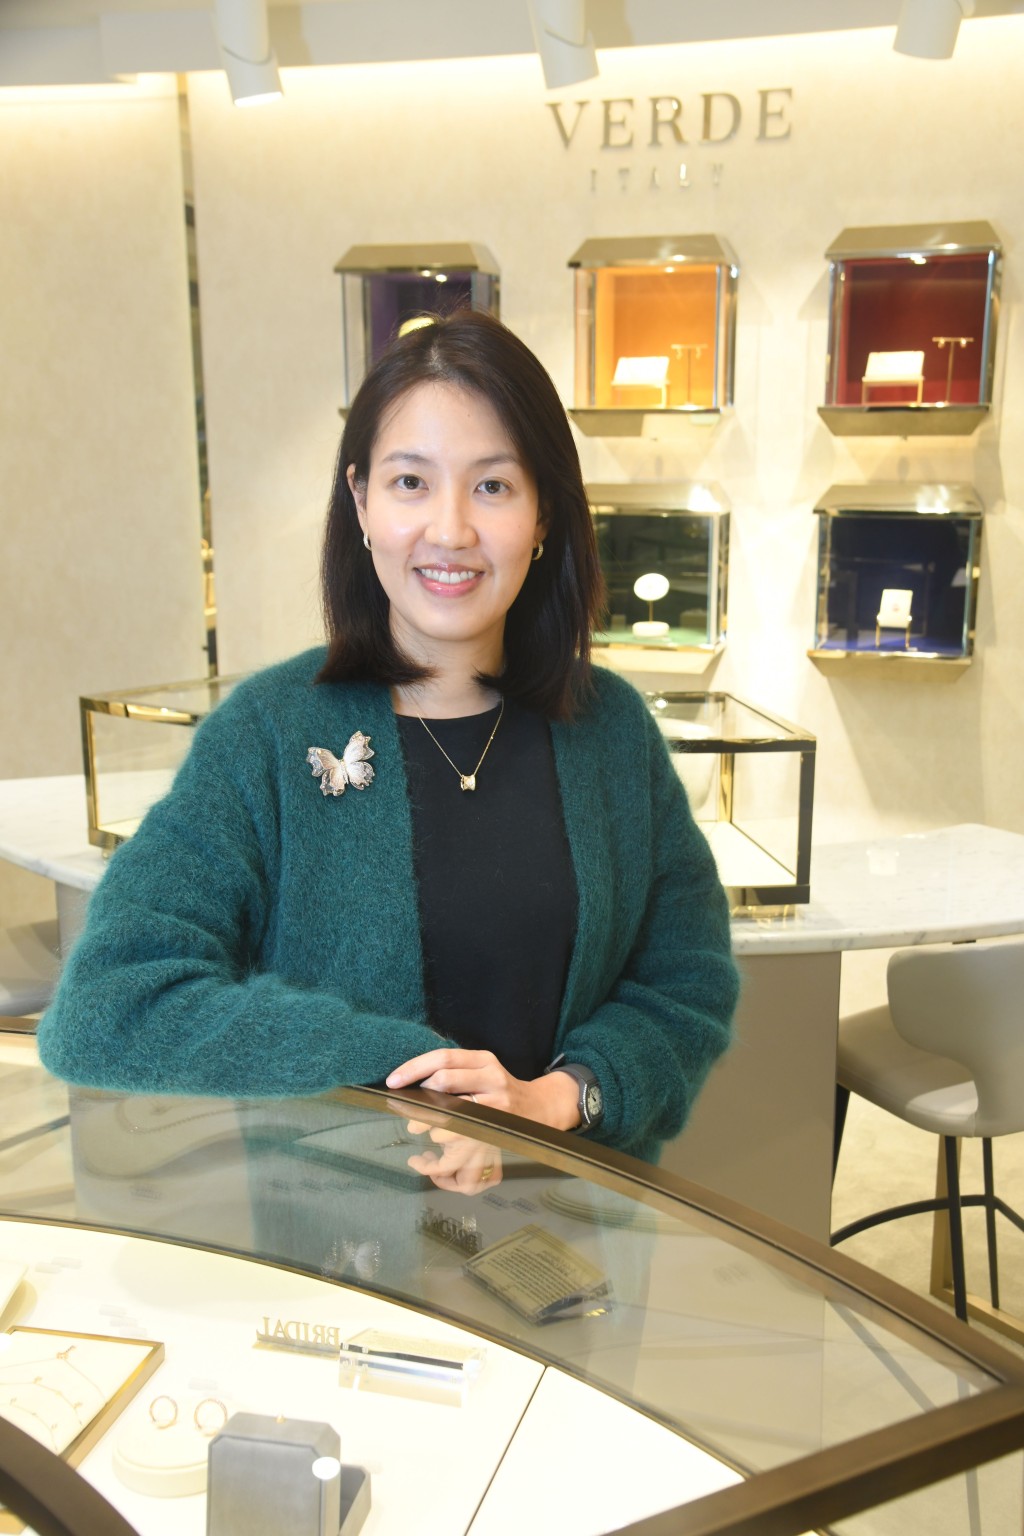 珠宝品牌Verde Jewellery的董事总经理Diana Wong（王淑筠），满腔热诚要为顾客带来更多优质的珠宝选择。